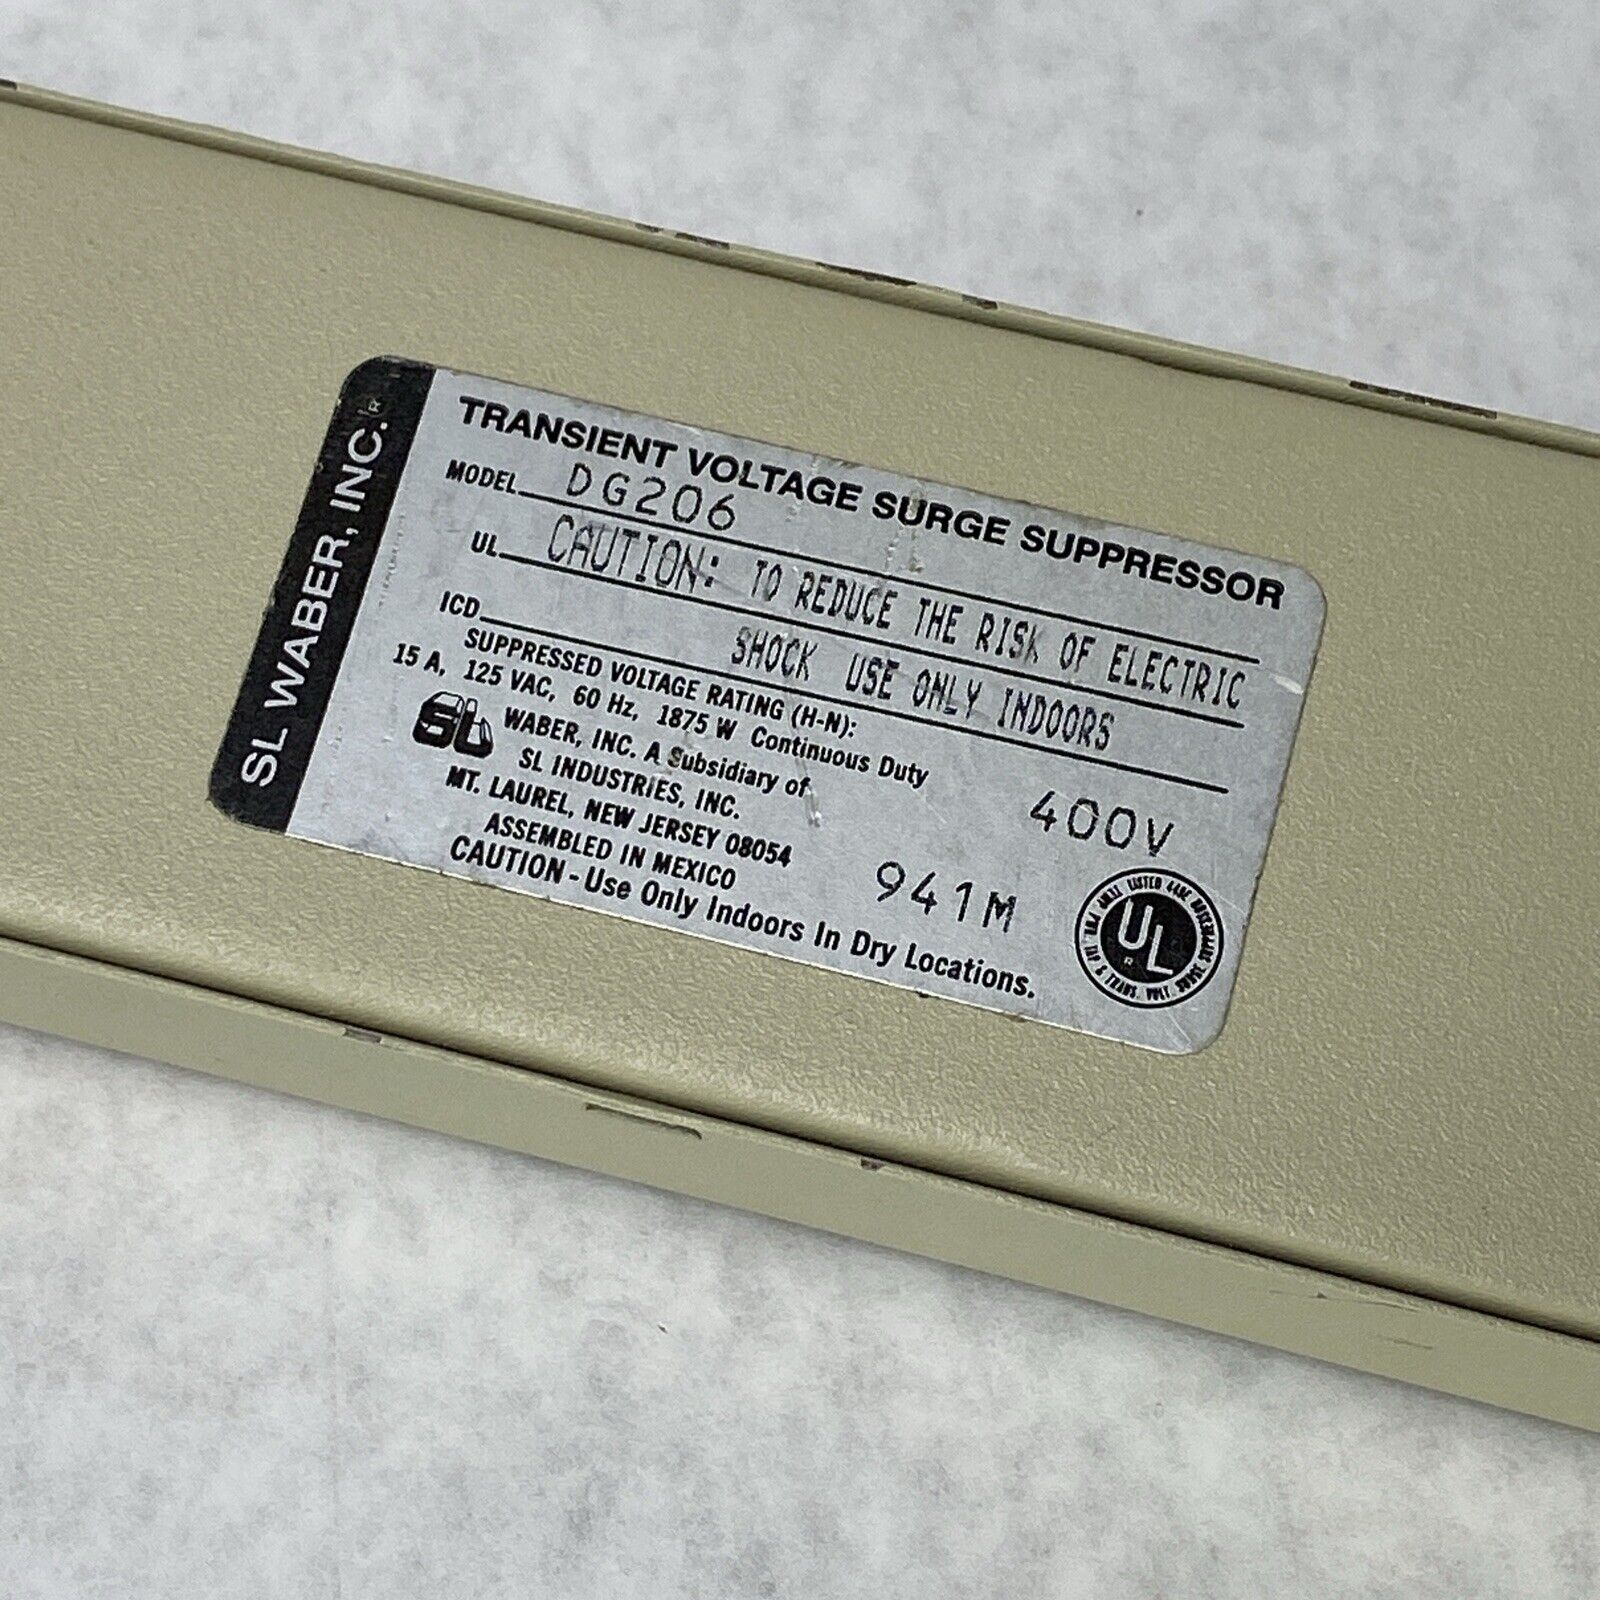 Datagard DG206 6-Outlet 6-Ft Cable Transient Voltage Surge Suppressor 400V